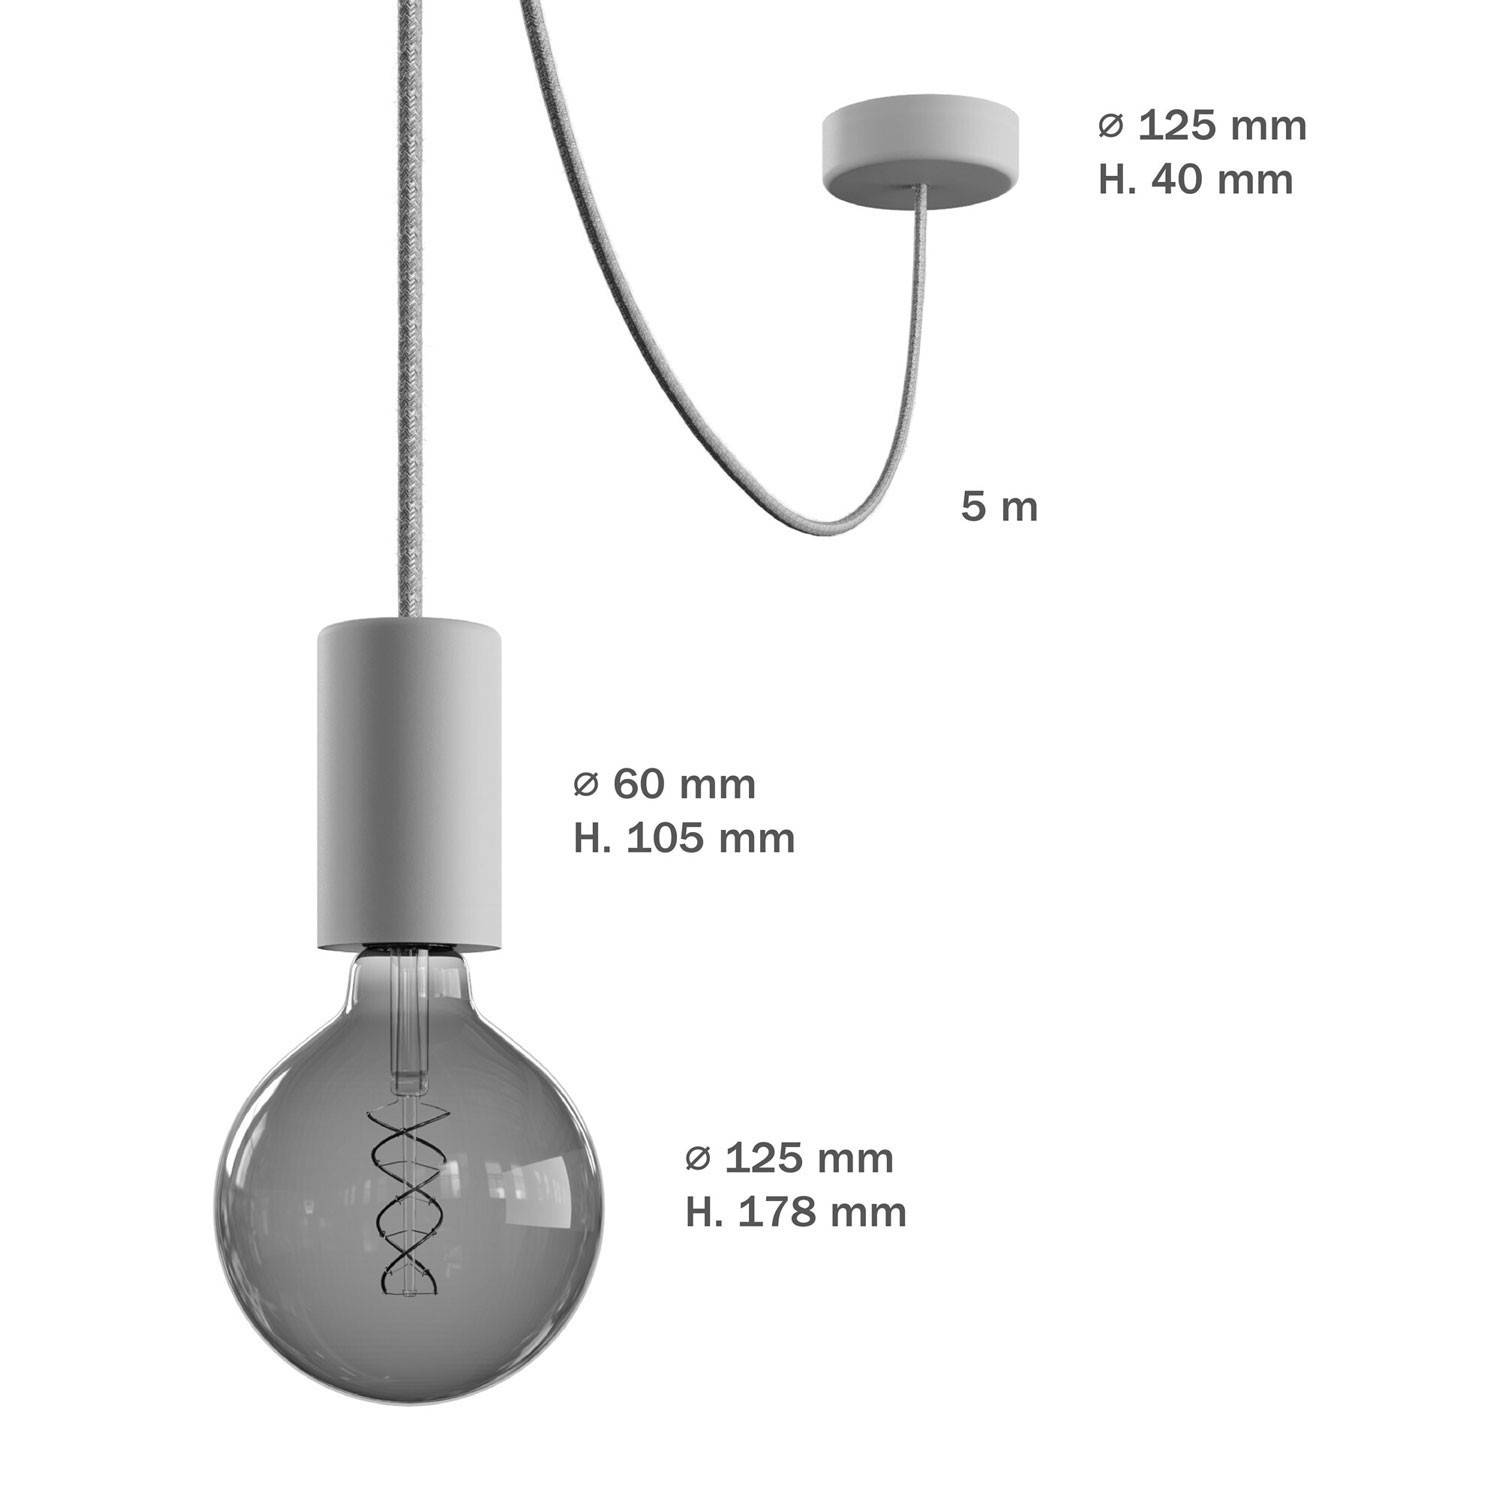 Lampa de exterior EIVA ELEGANT cu cablu textil de 5 metri, decentralizator, rozetă de tavan și suport pentru bec rezistent la ap